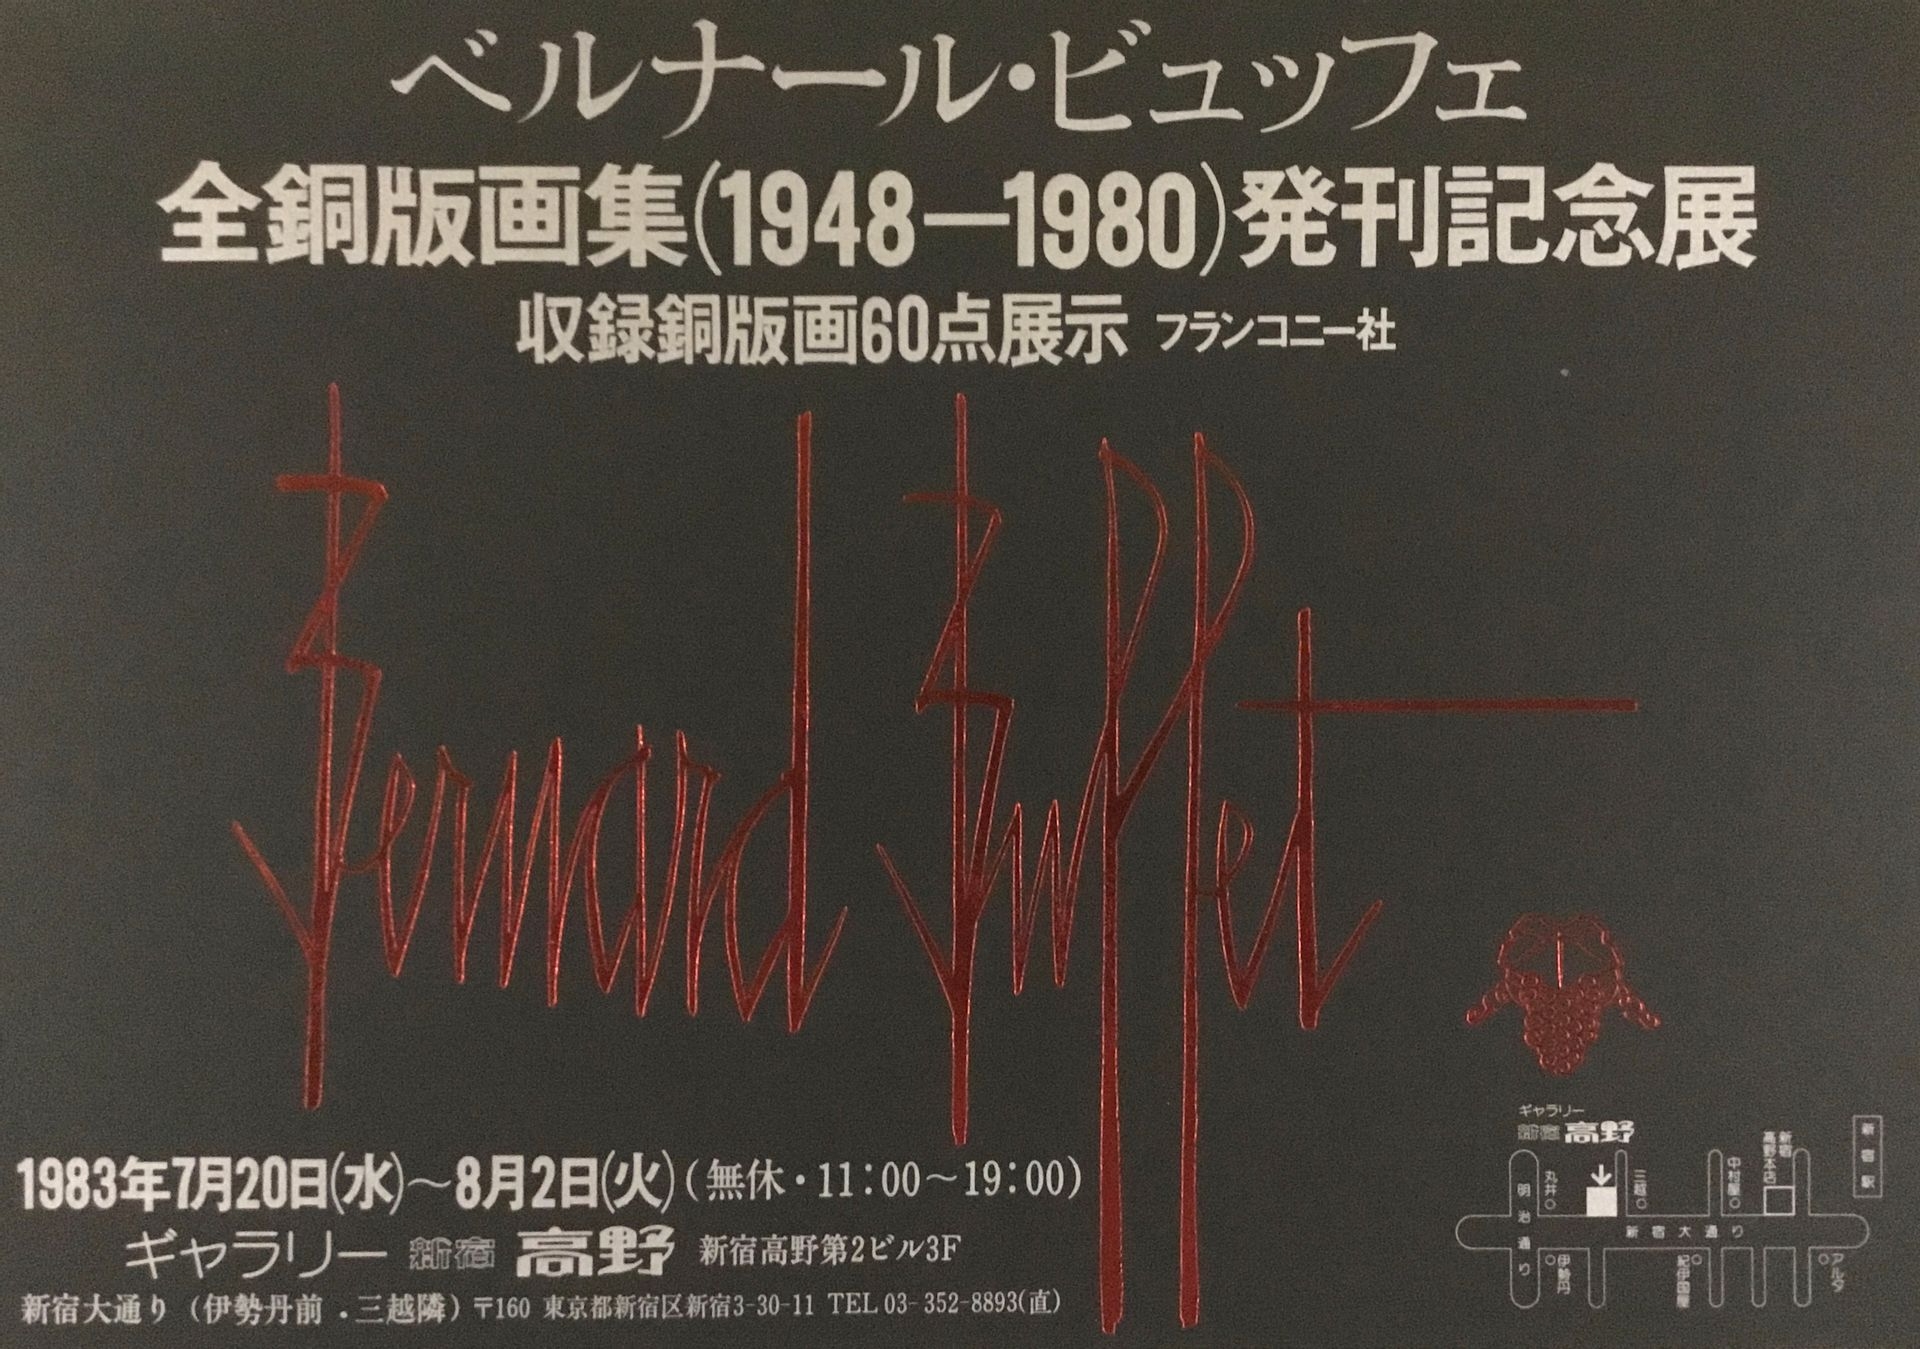 Bernard Buffet | BUFFET Bernard Poster silkscreen made for Japan